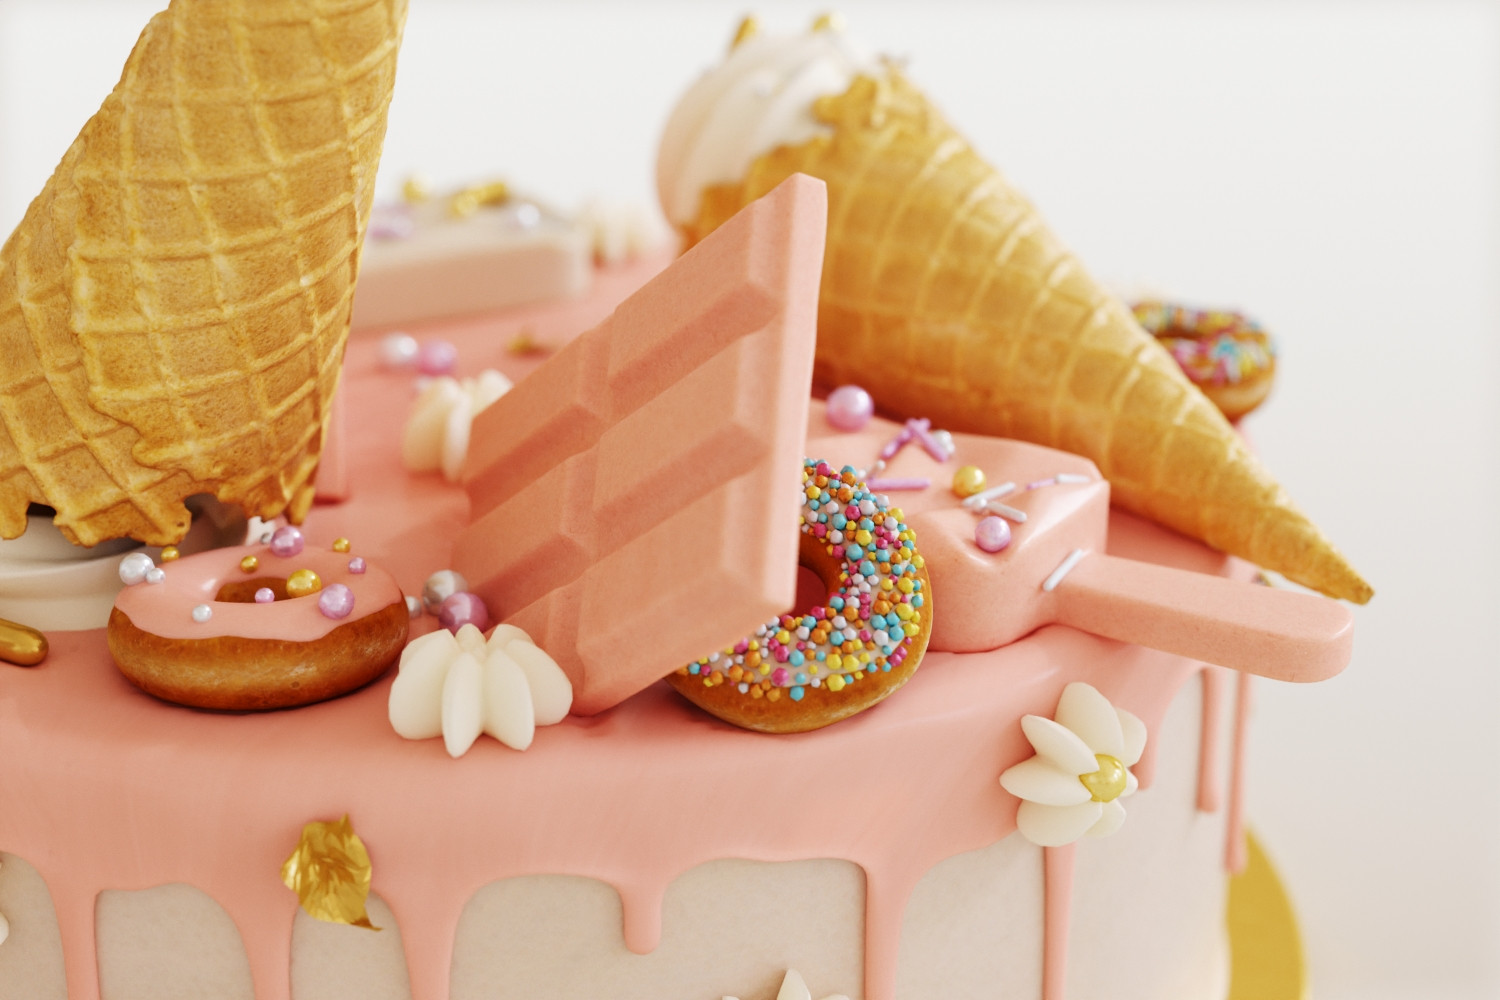 Little Ice Cream Cake Model Stock Photo 460447081 | Shutterstock